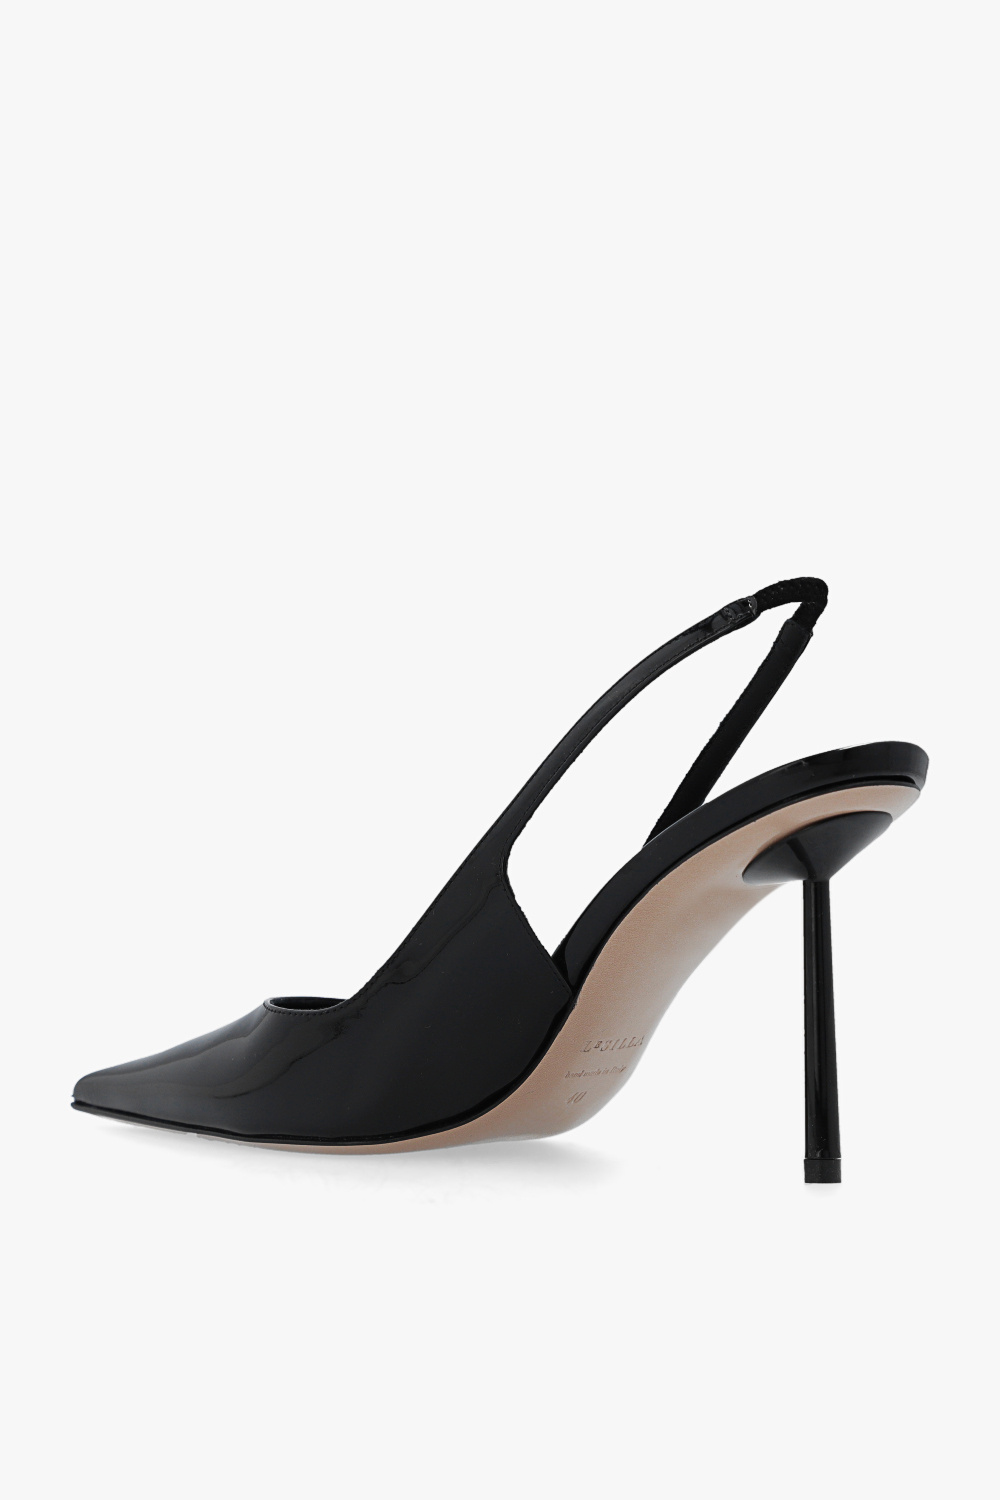 Le Silla ‘Bella’ pumps | Women's Shoes | Vitkac